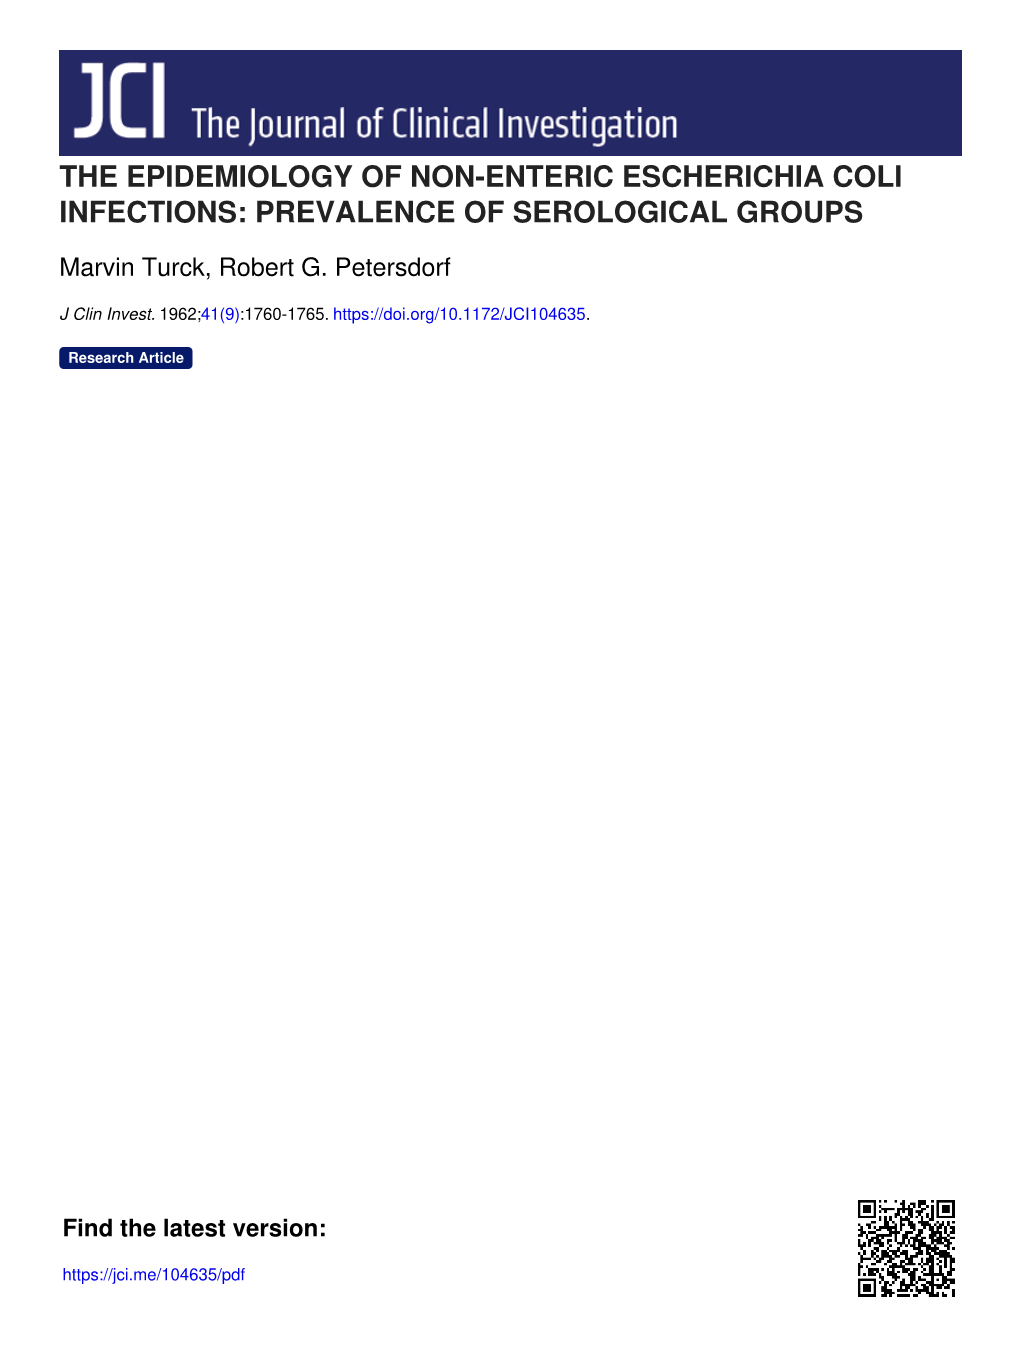 The Epidemiology of Non-Enteric Escherichia Coli Infections: Prevalence of Serological Groups